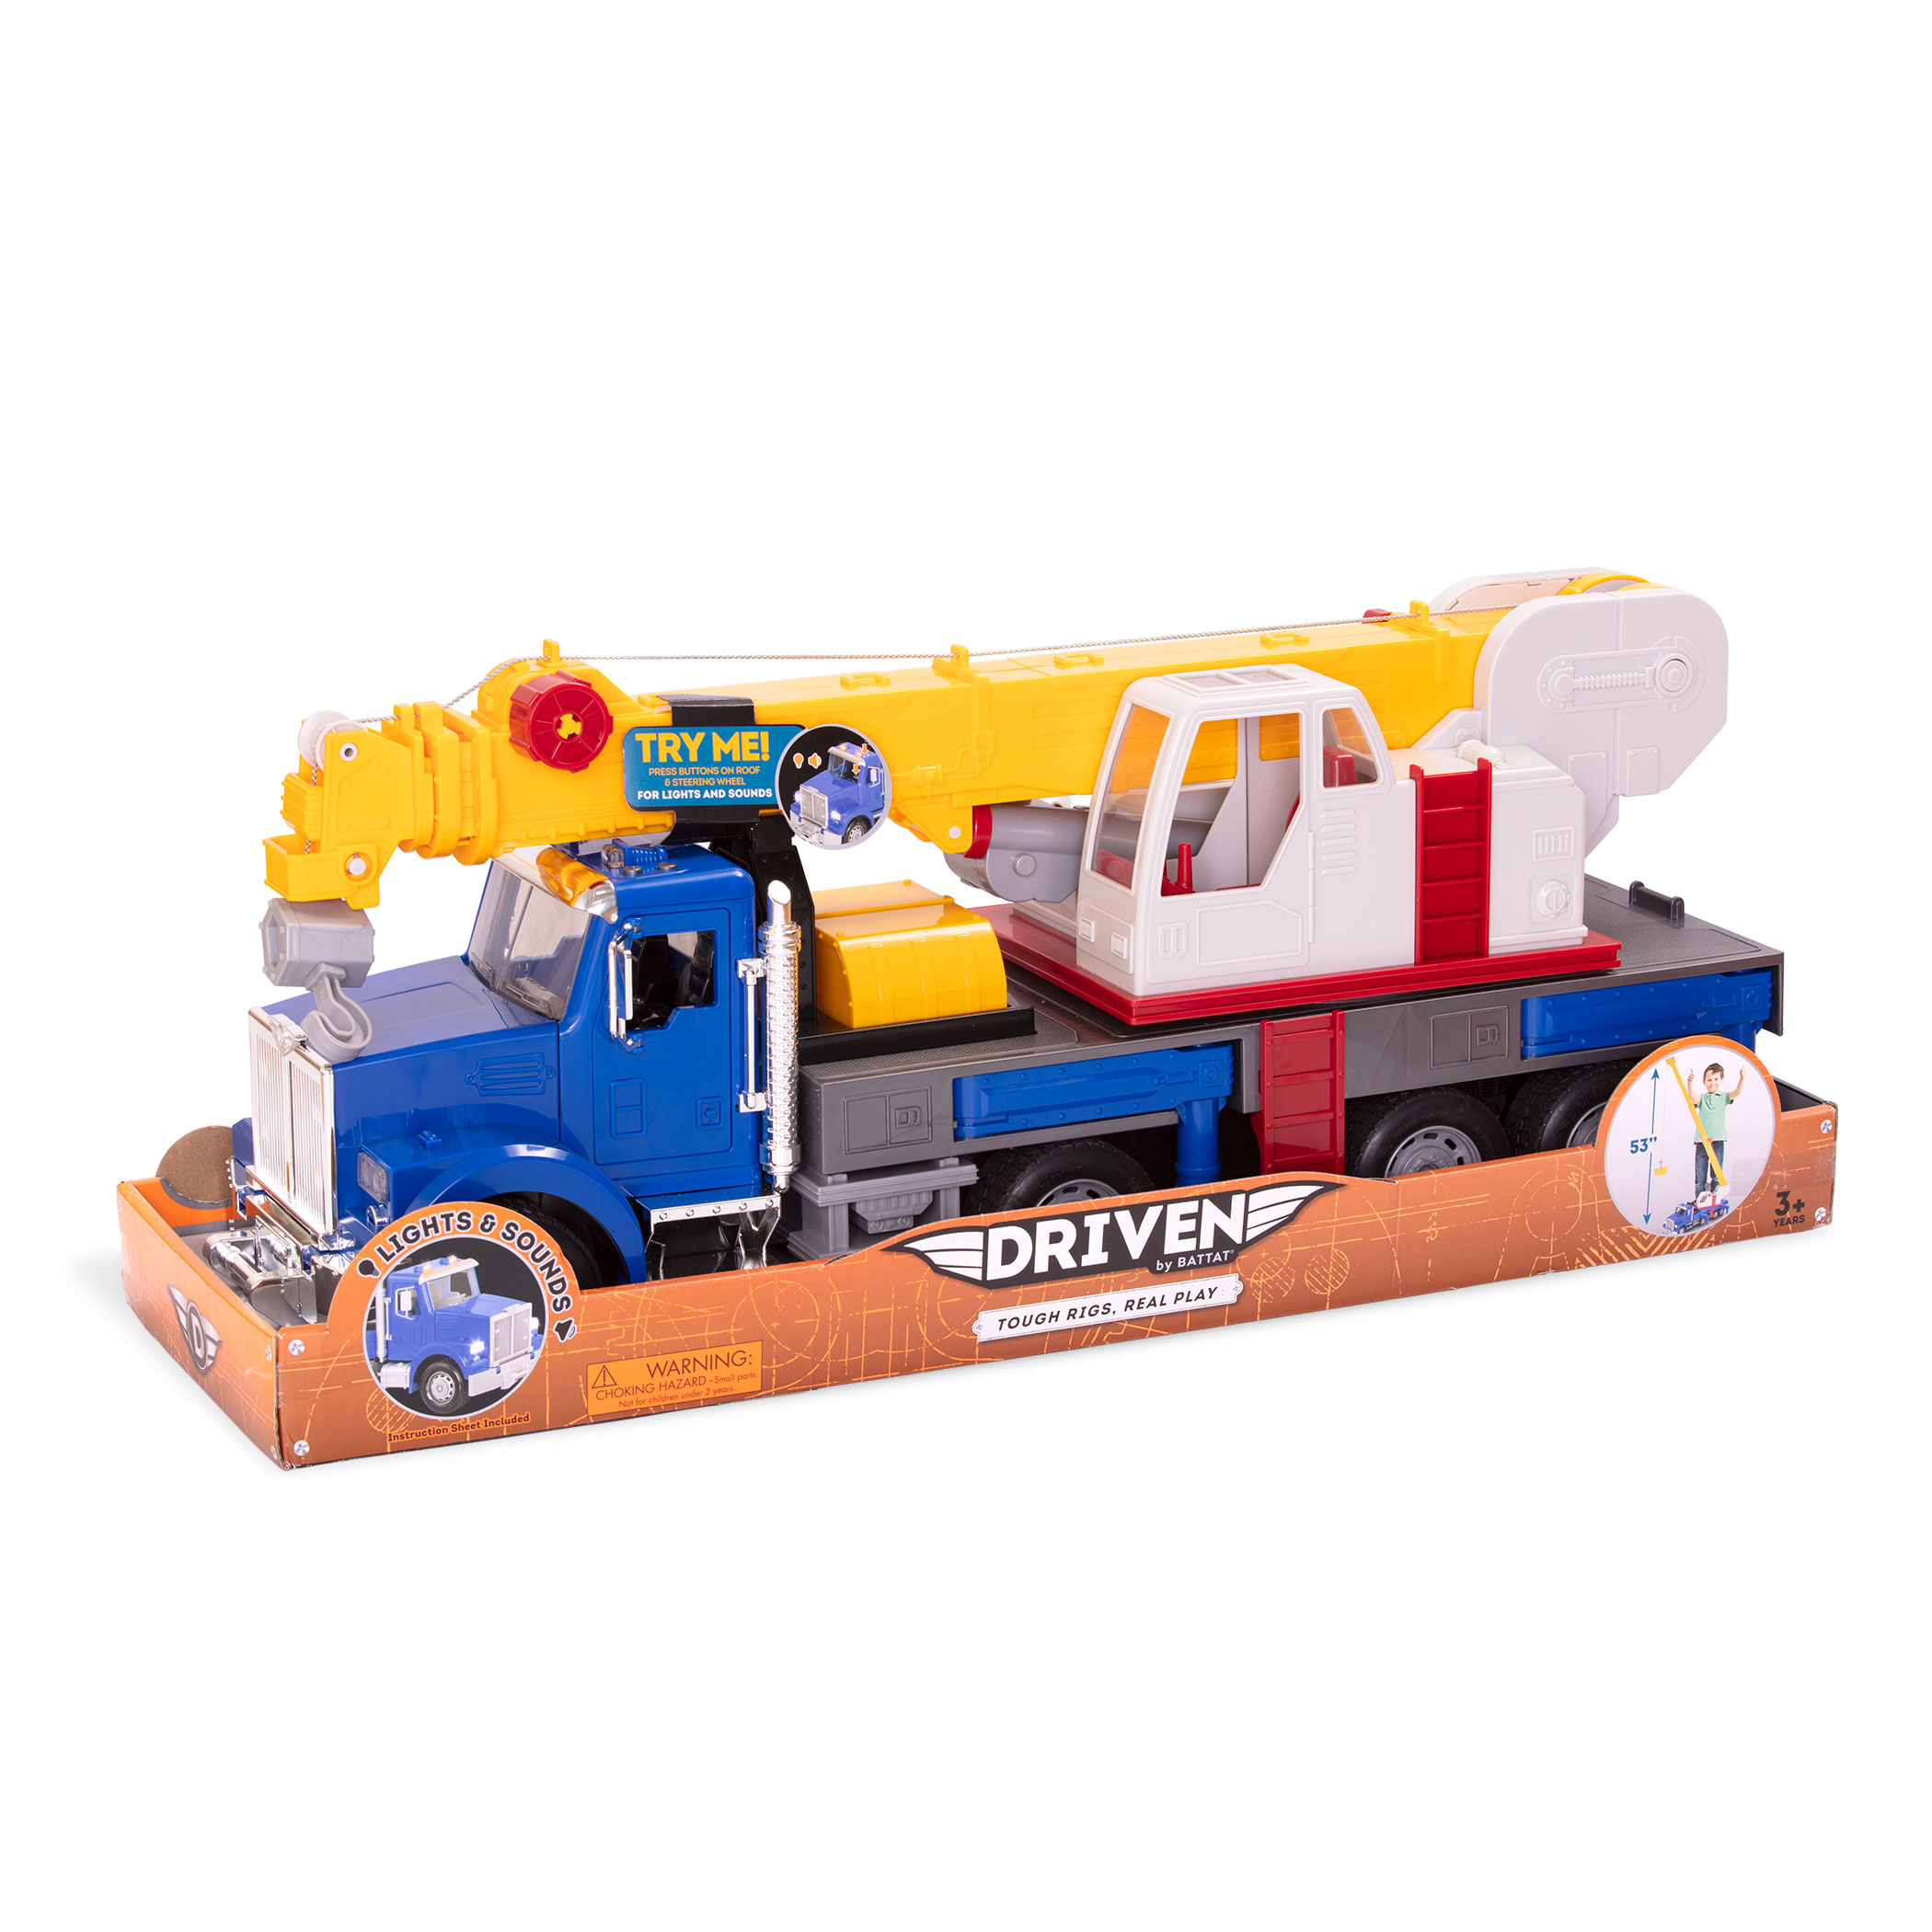 driven toy trucks